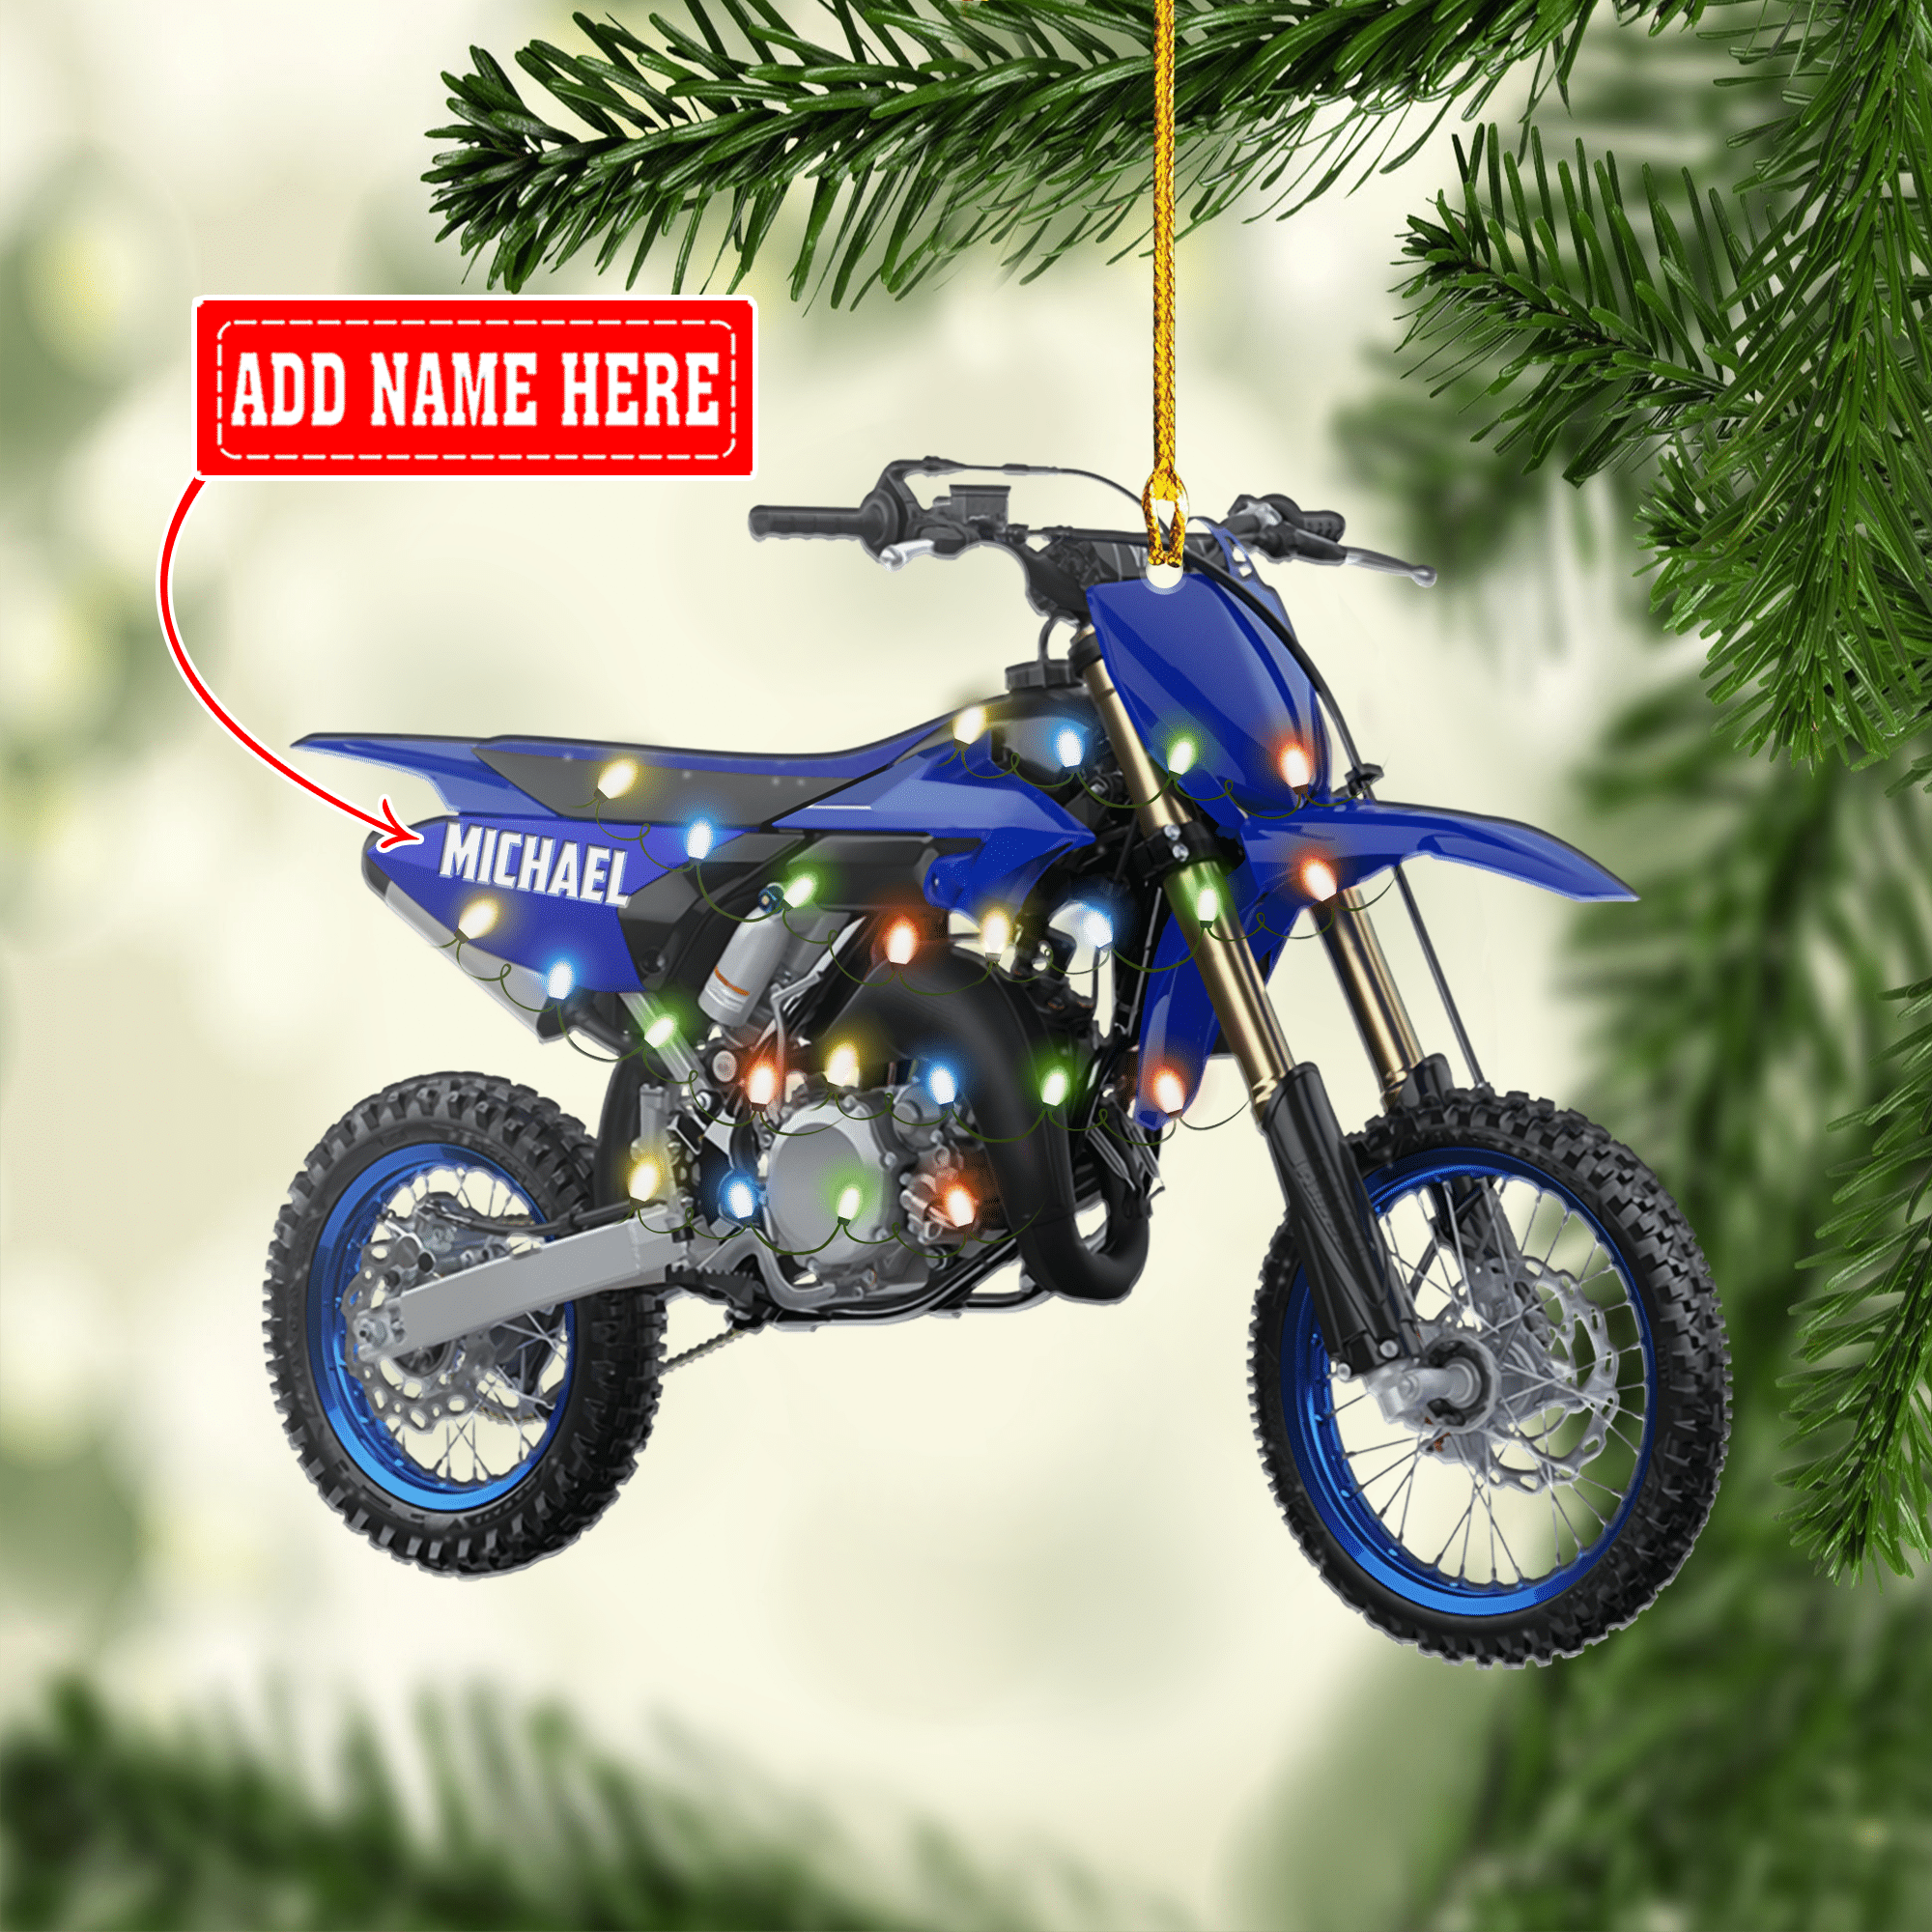 Personalized Motocross Ornament/ Biker Christmas Ornament/ Motorcycle Ornament/ Dirt Bike Ornament/ Custom Name Ornament for Men